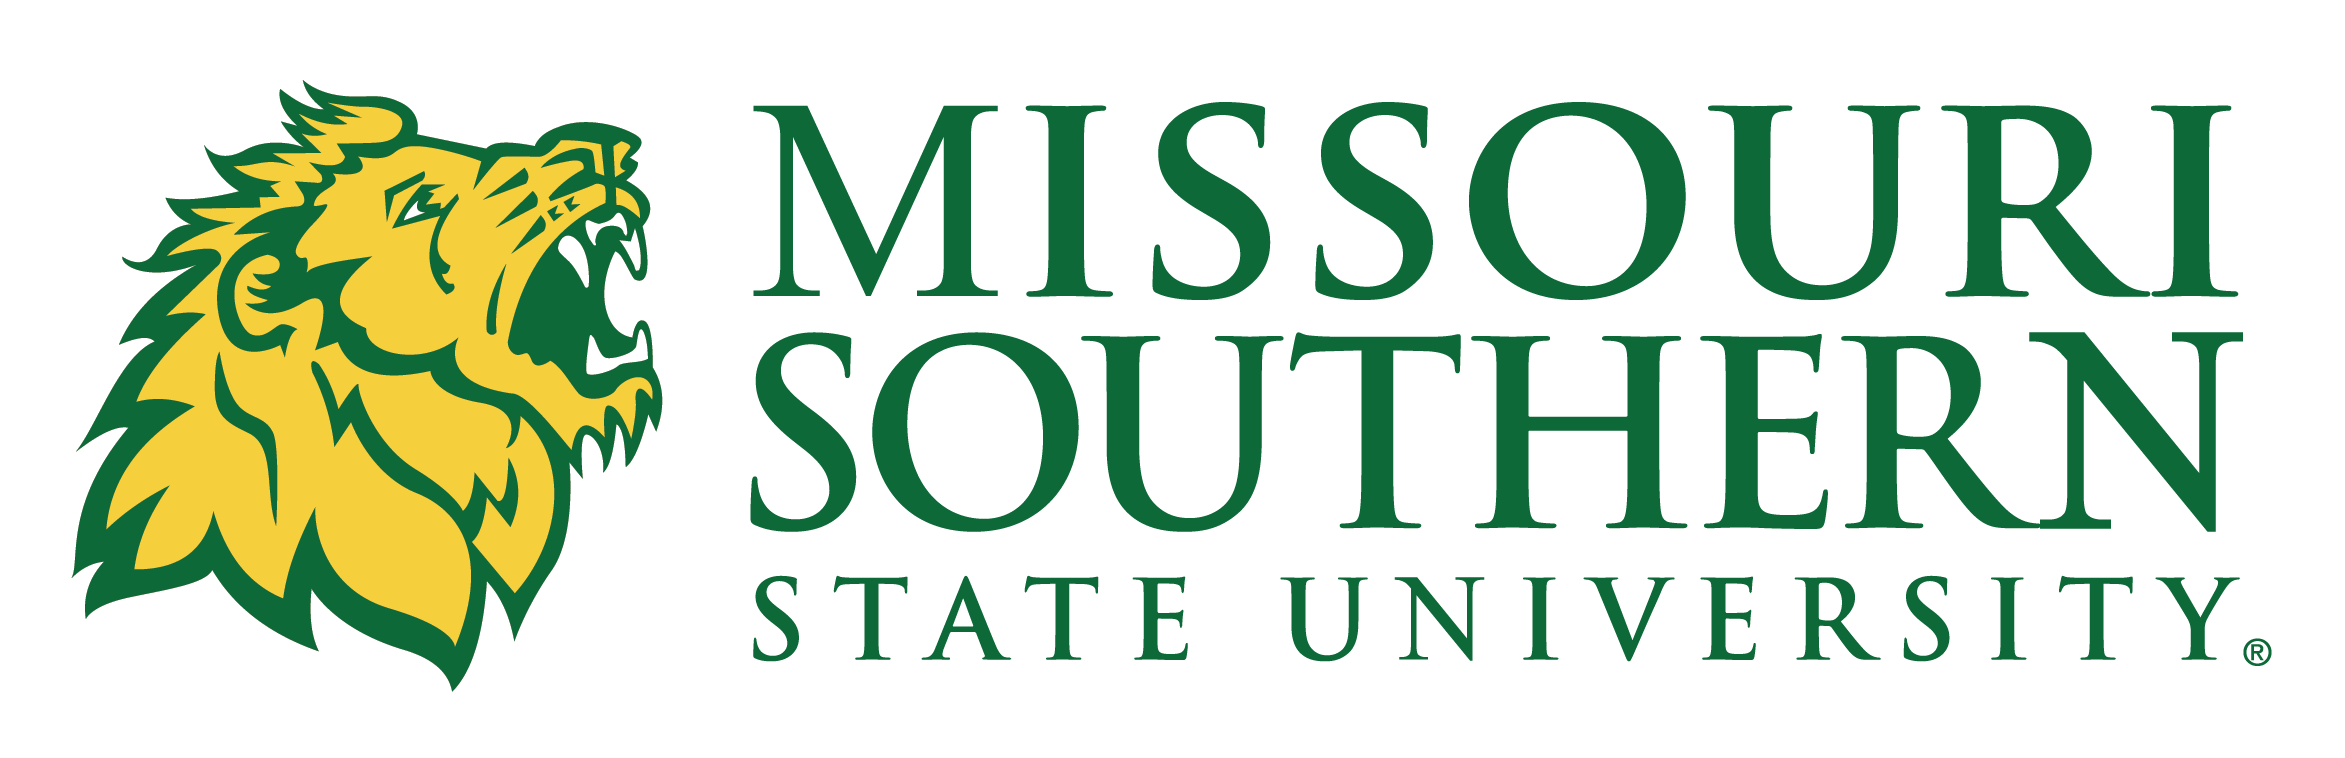 Missouri Southern State University Logo